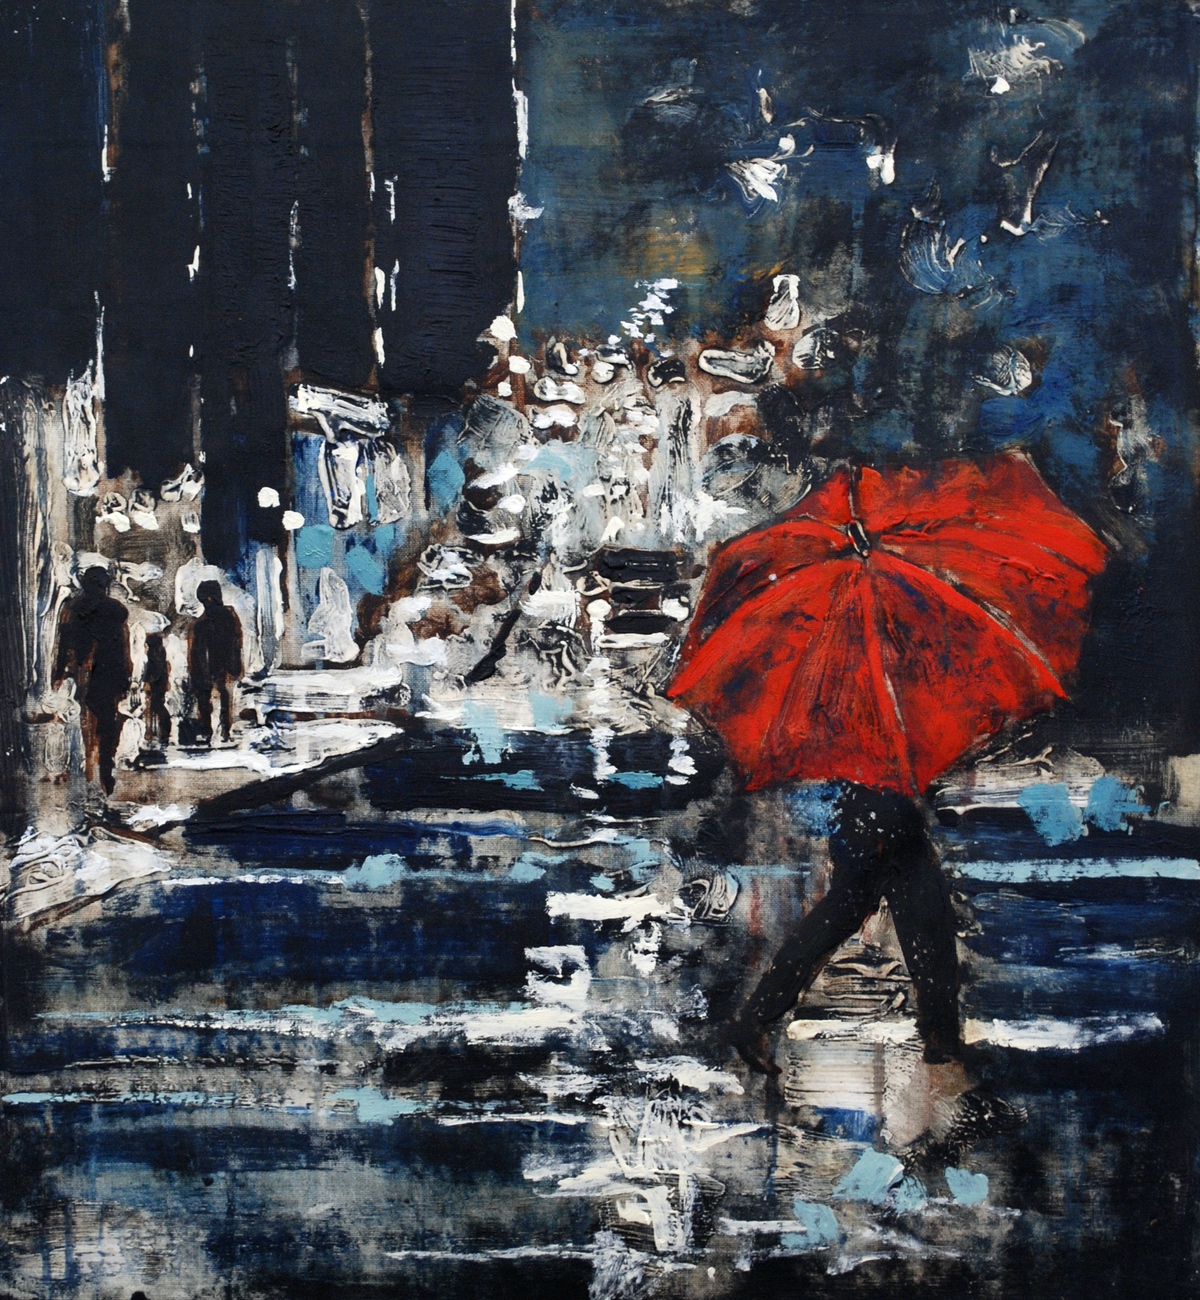 “At skærme sig mod regn” I, 2011, 45 x 40 cm. Akryl på lærred. (Carsten Frank nr. 1494) Sold